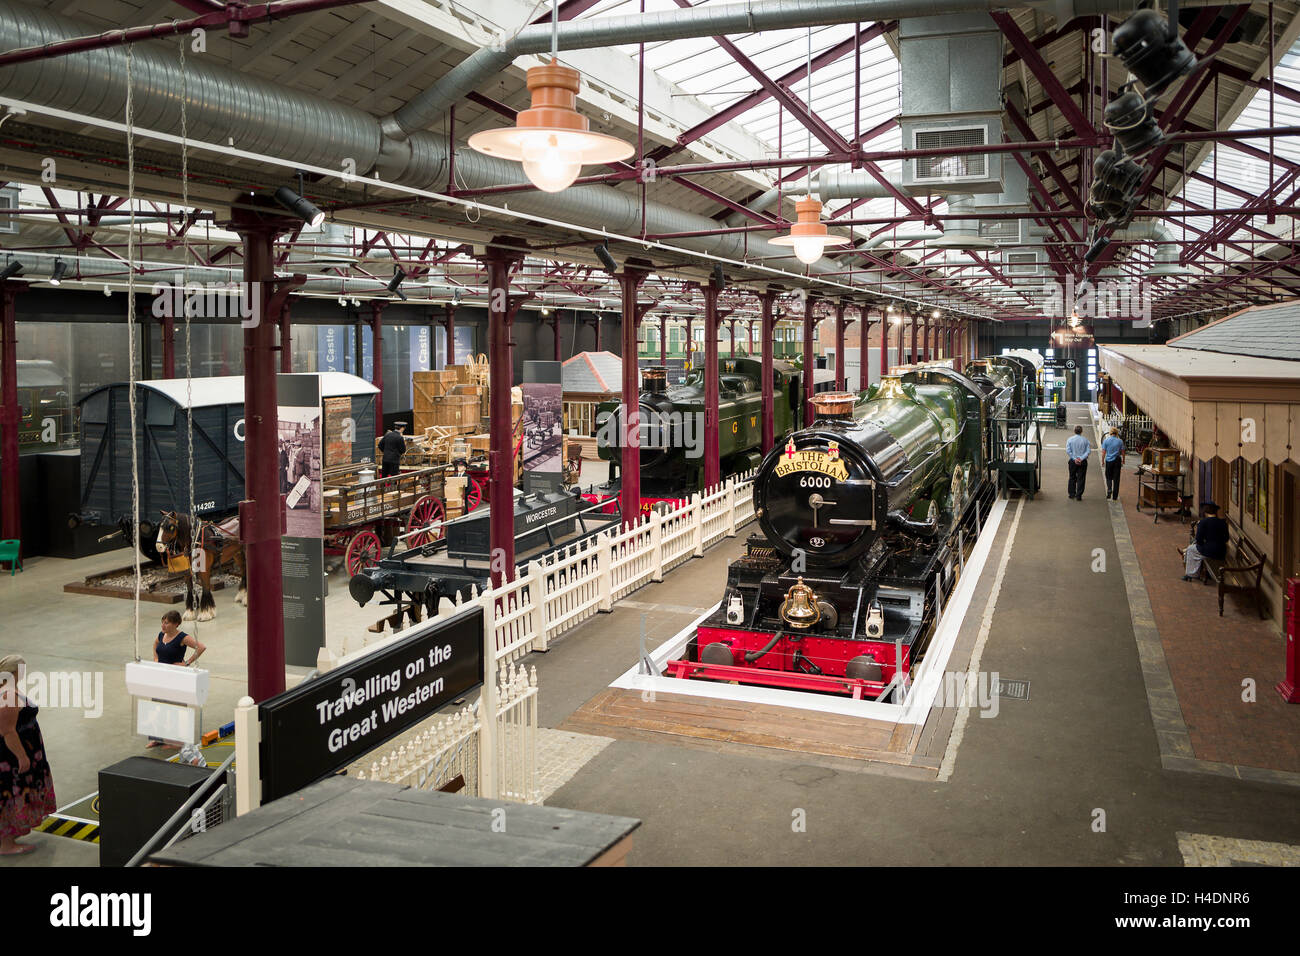 Vue de haut niveau de la réplique de la GWR gare dans Steam Museum London UK Banque D'Images